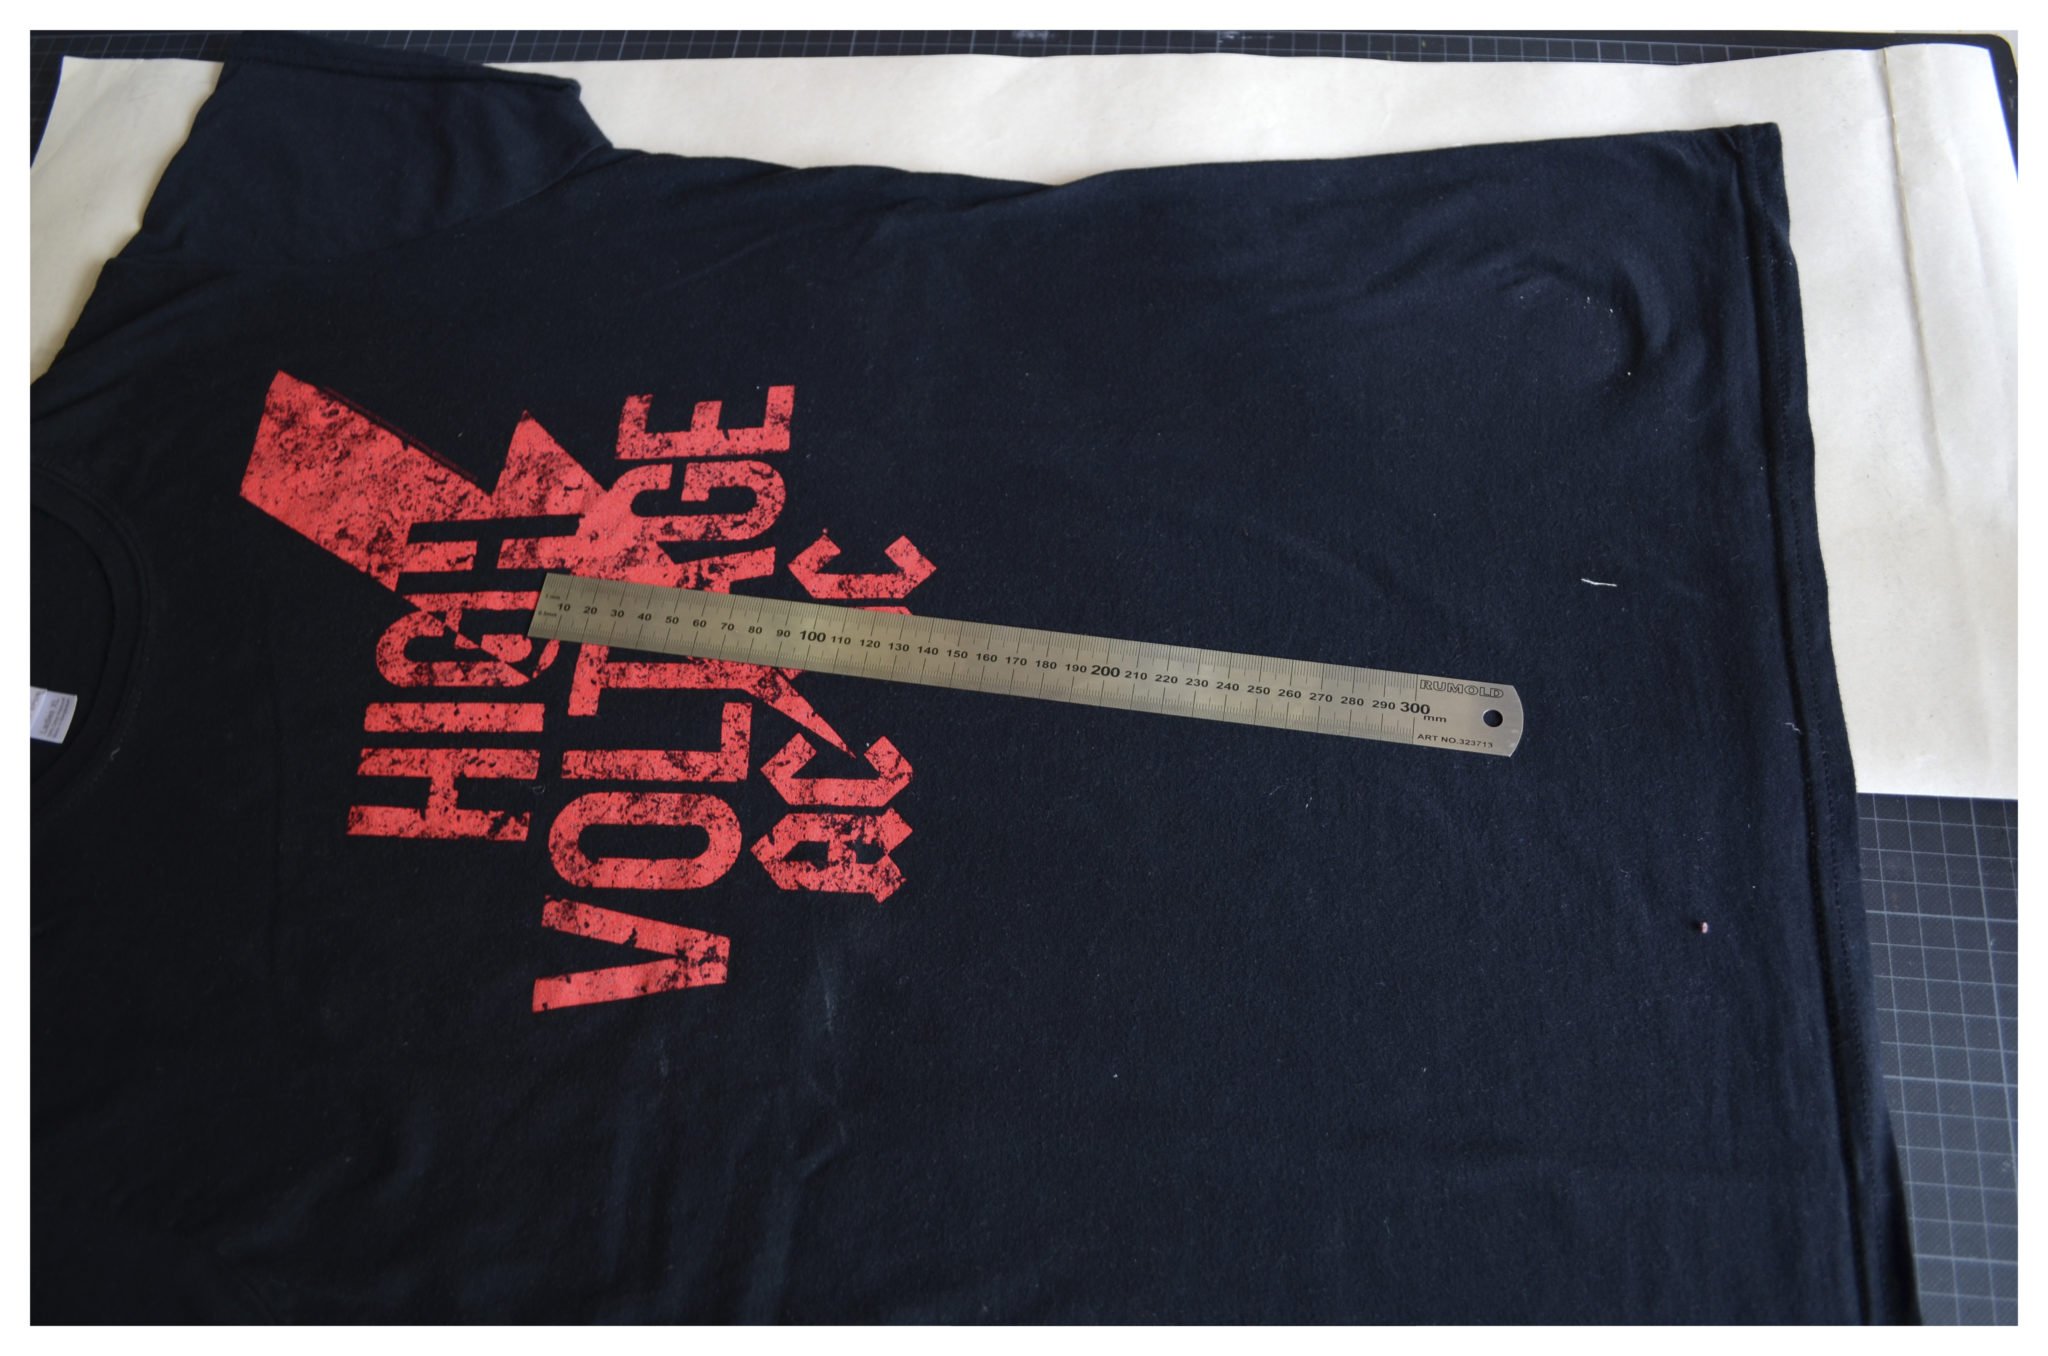 t-shirt selber machen - Schnitt von Lieblingsshirt kopieren